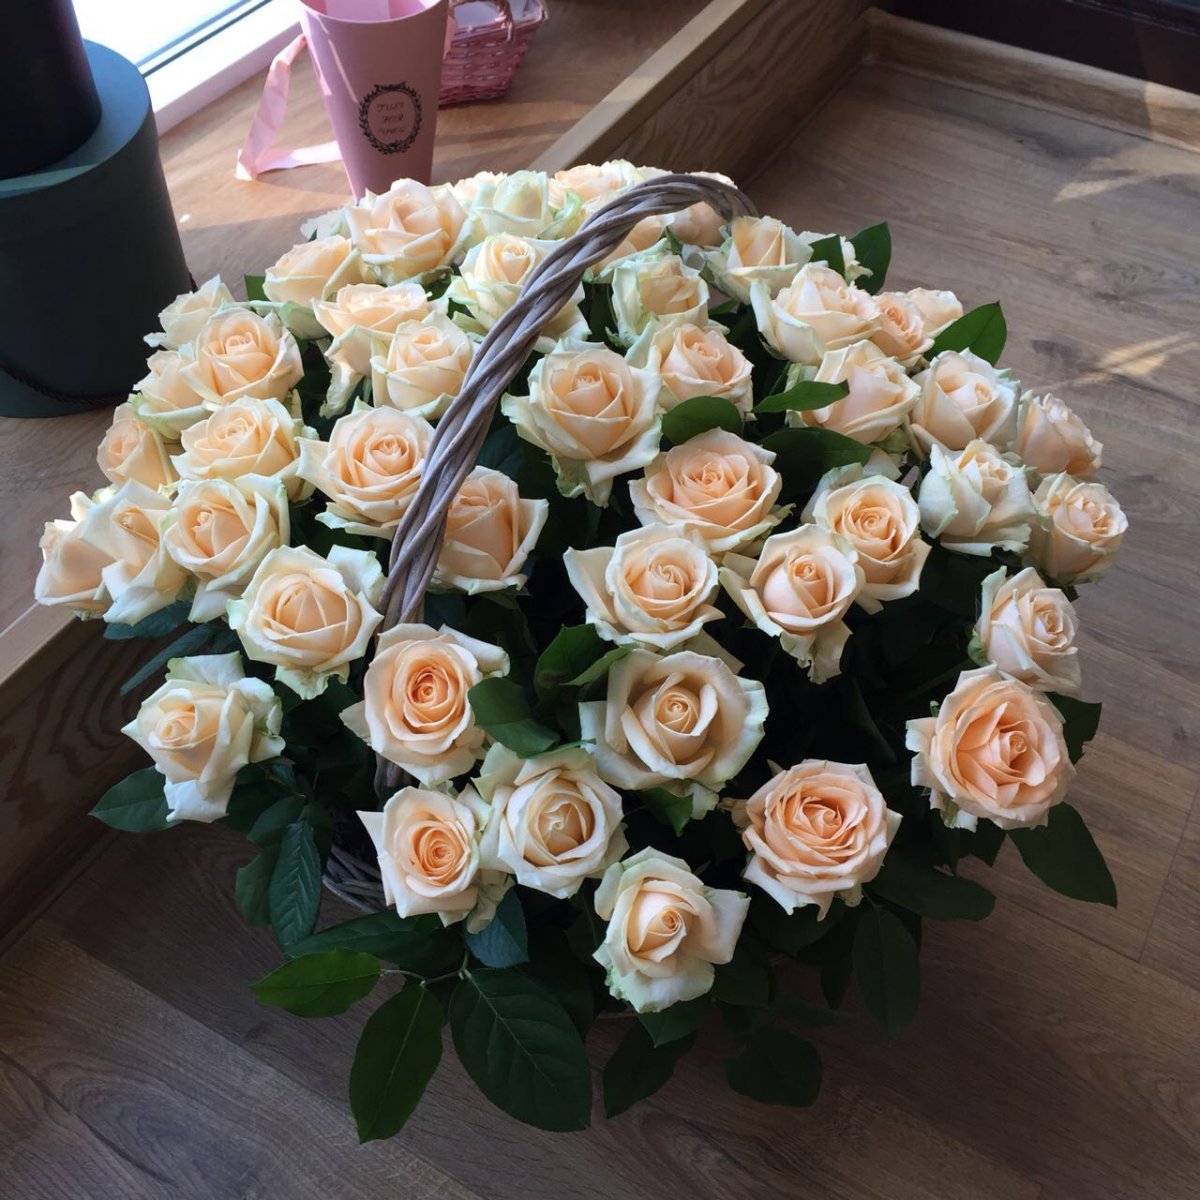 Фото реальных букетов цветов дома. Букет шикарный. Букет роз. Красивые большие букеты.